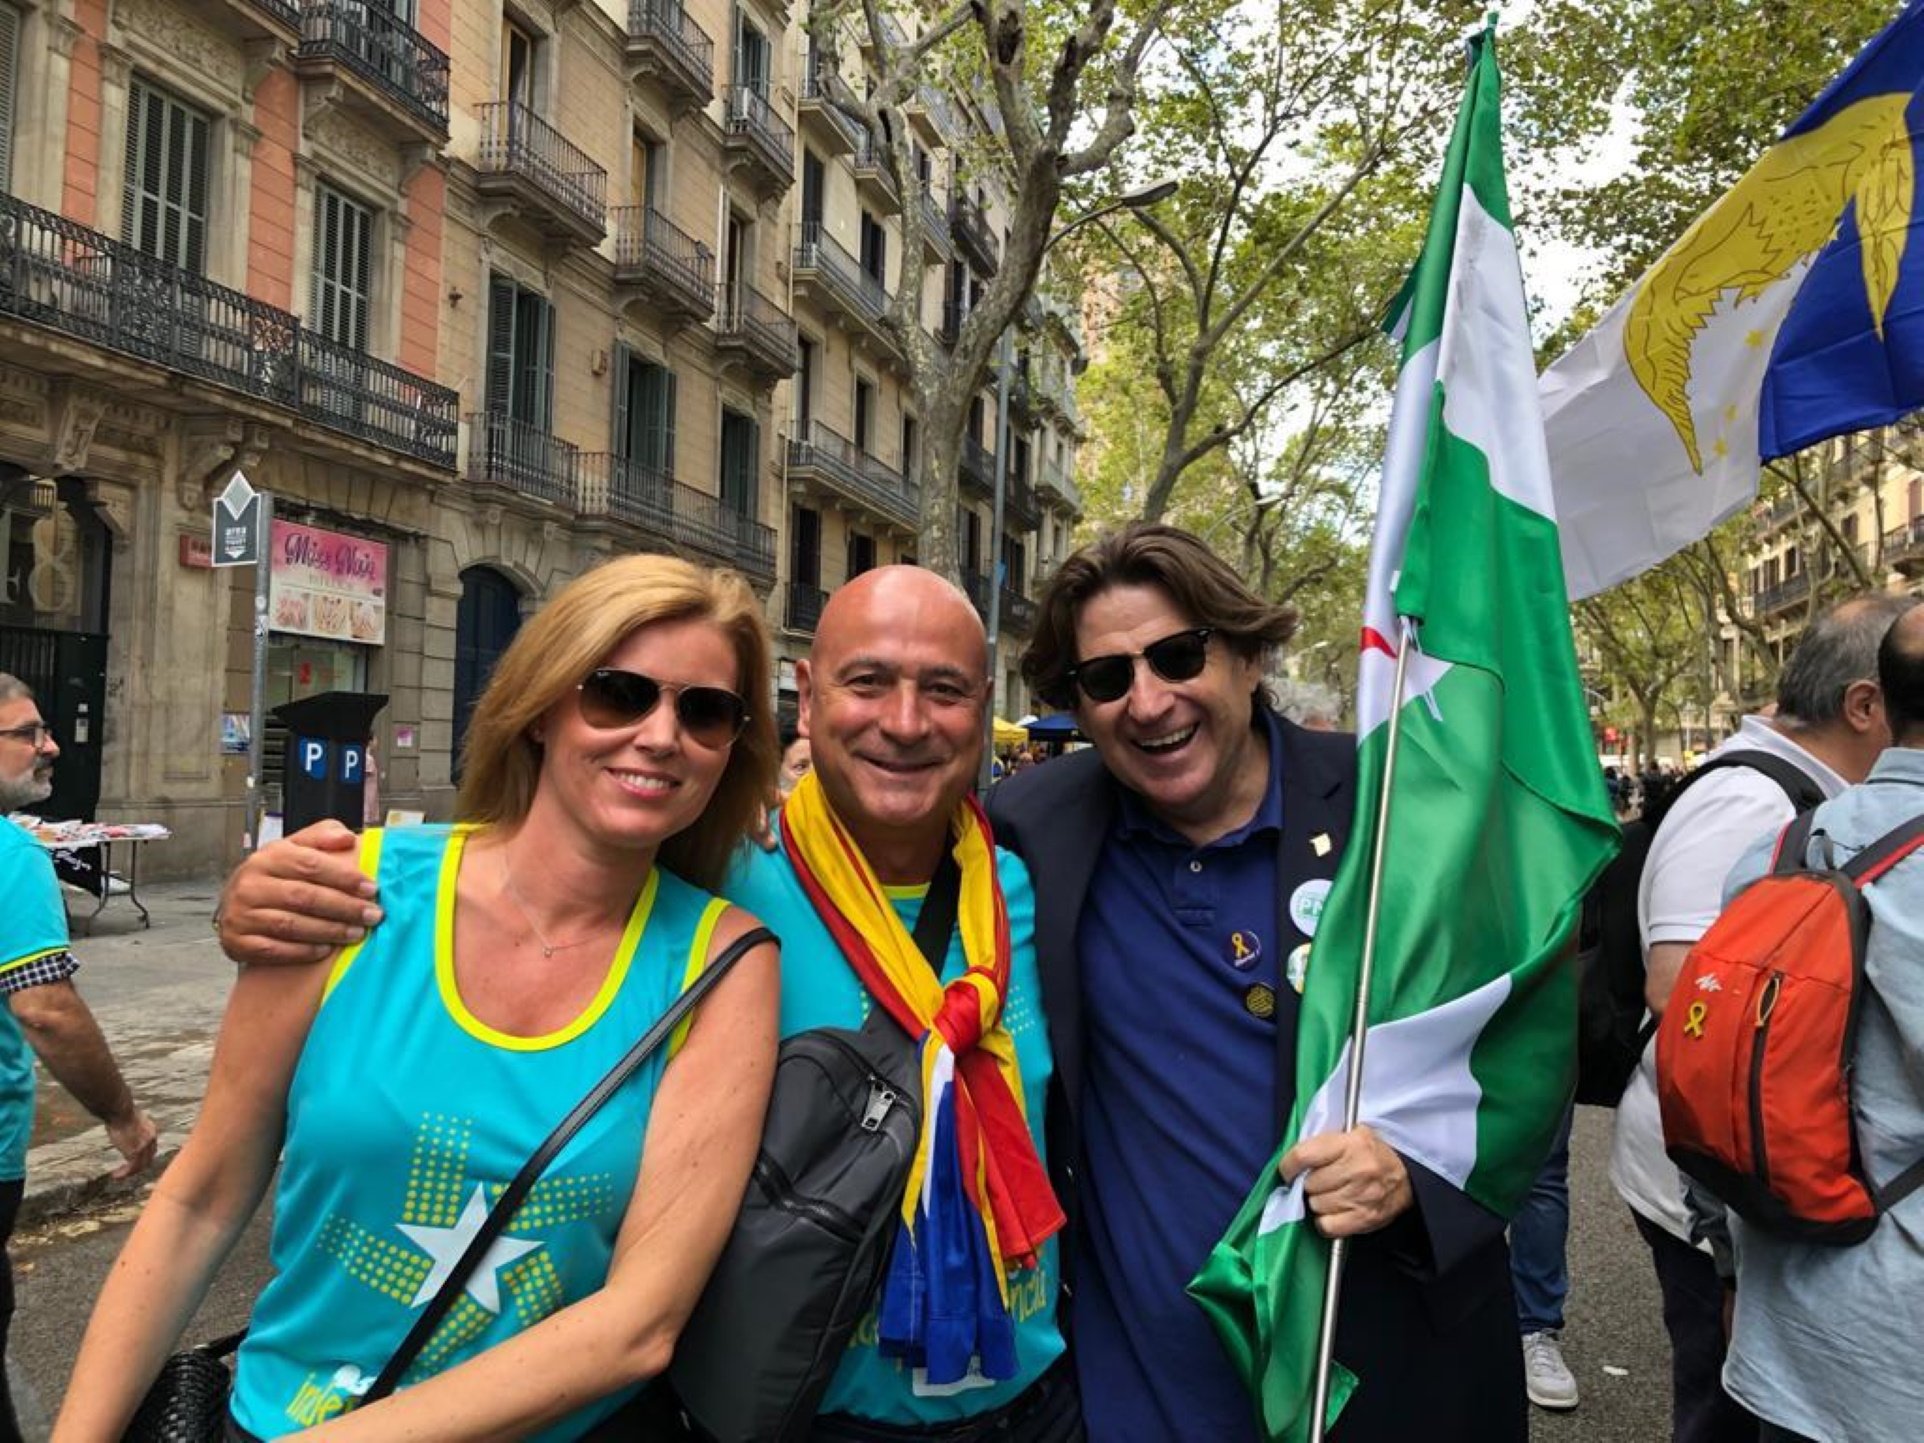 VÍDEO | Així agraeix Altamirano com de bé el tracten a Catalunya